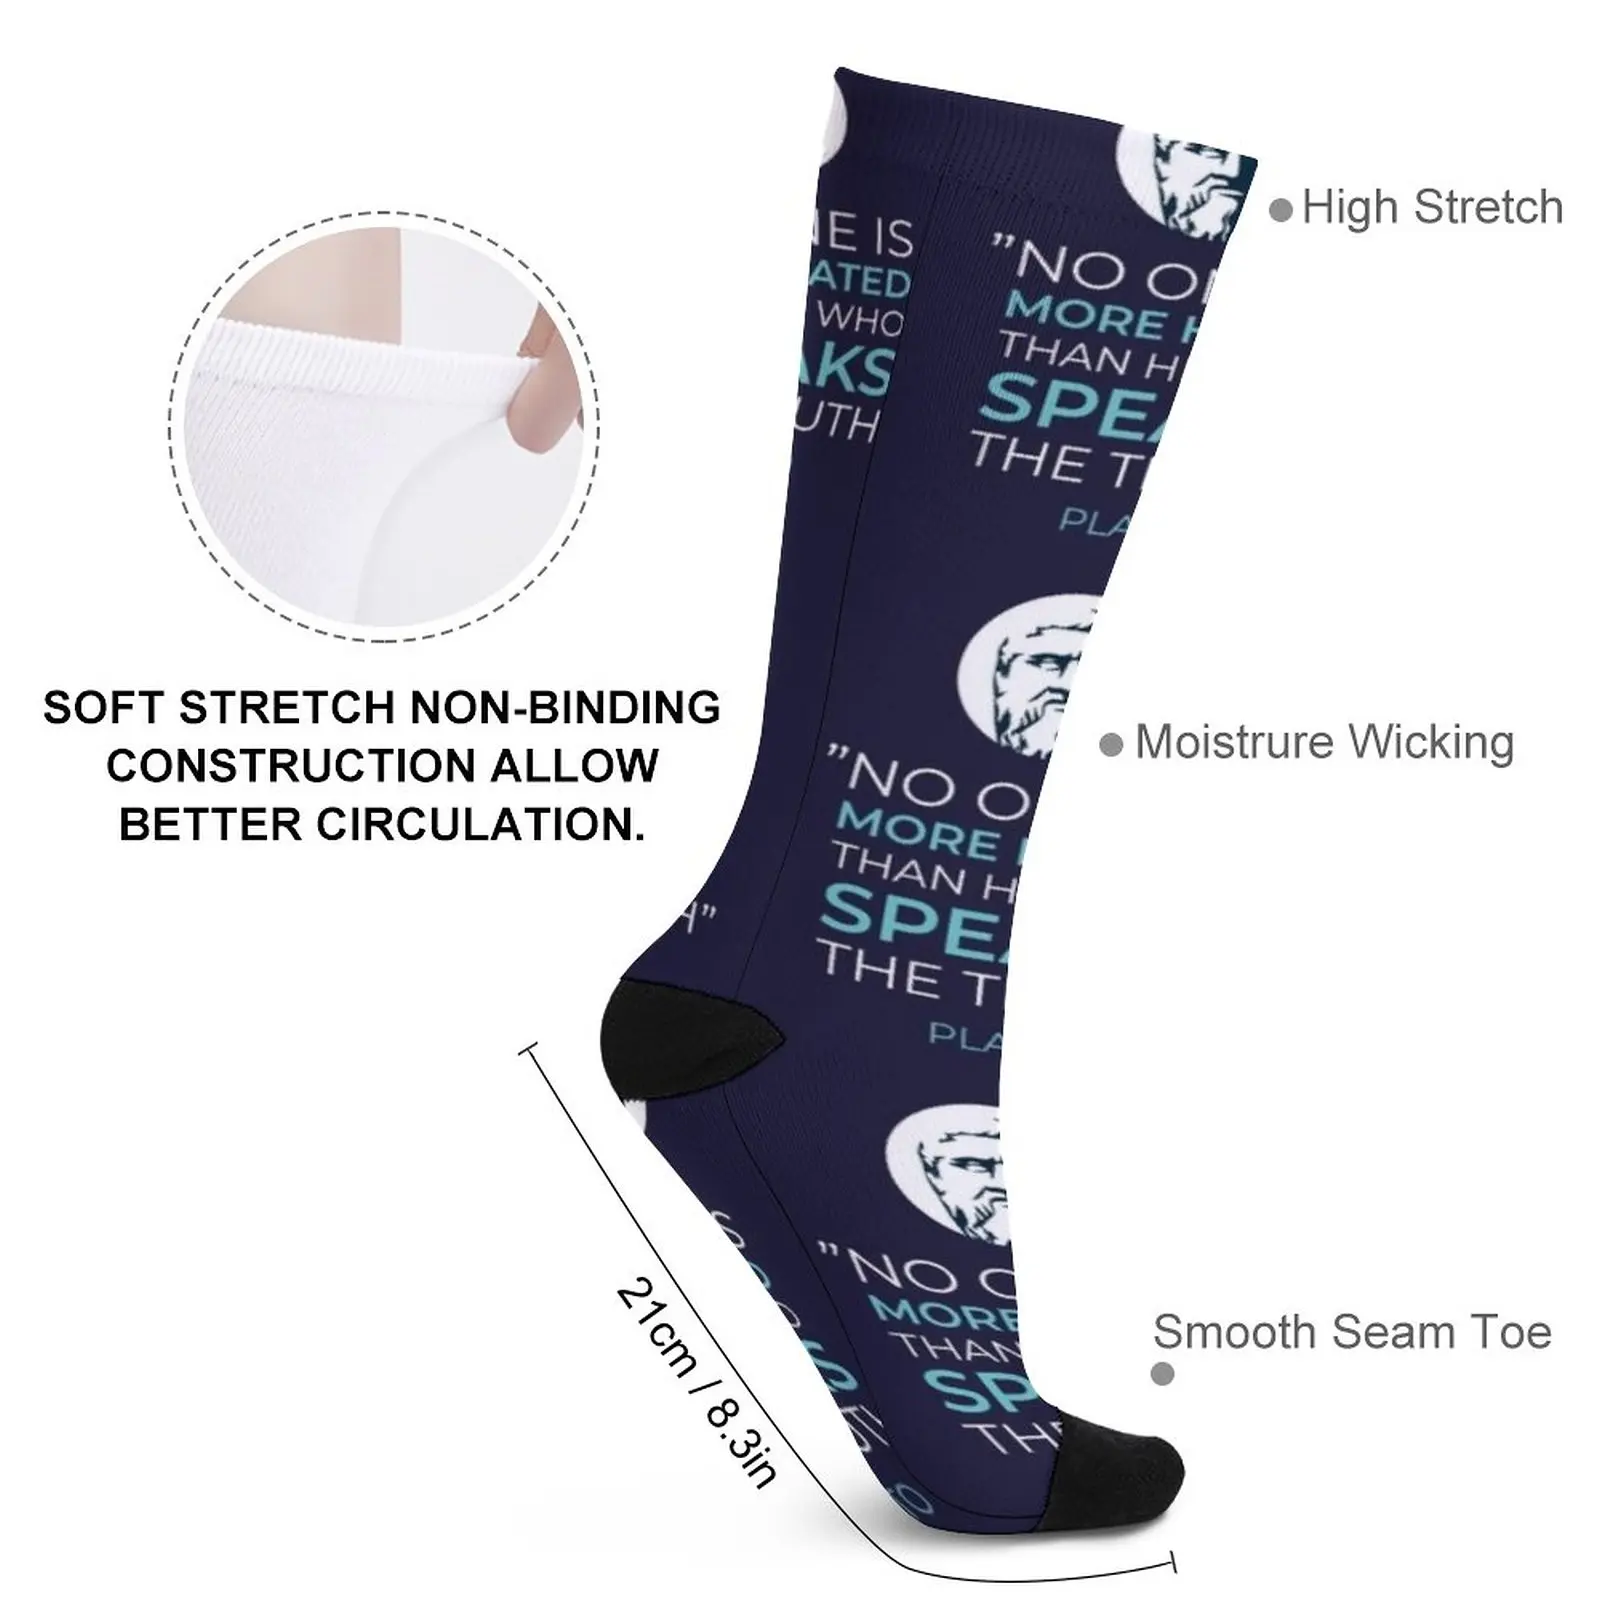 Philosopher, philosophy, Plato quote Socks Running socks man essential Women's socks high Men's soccer sock